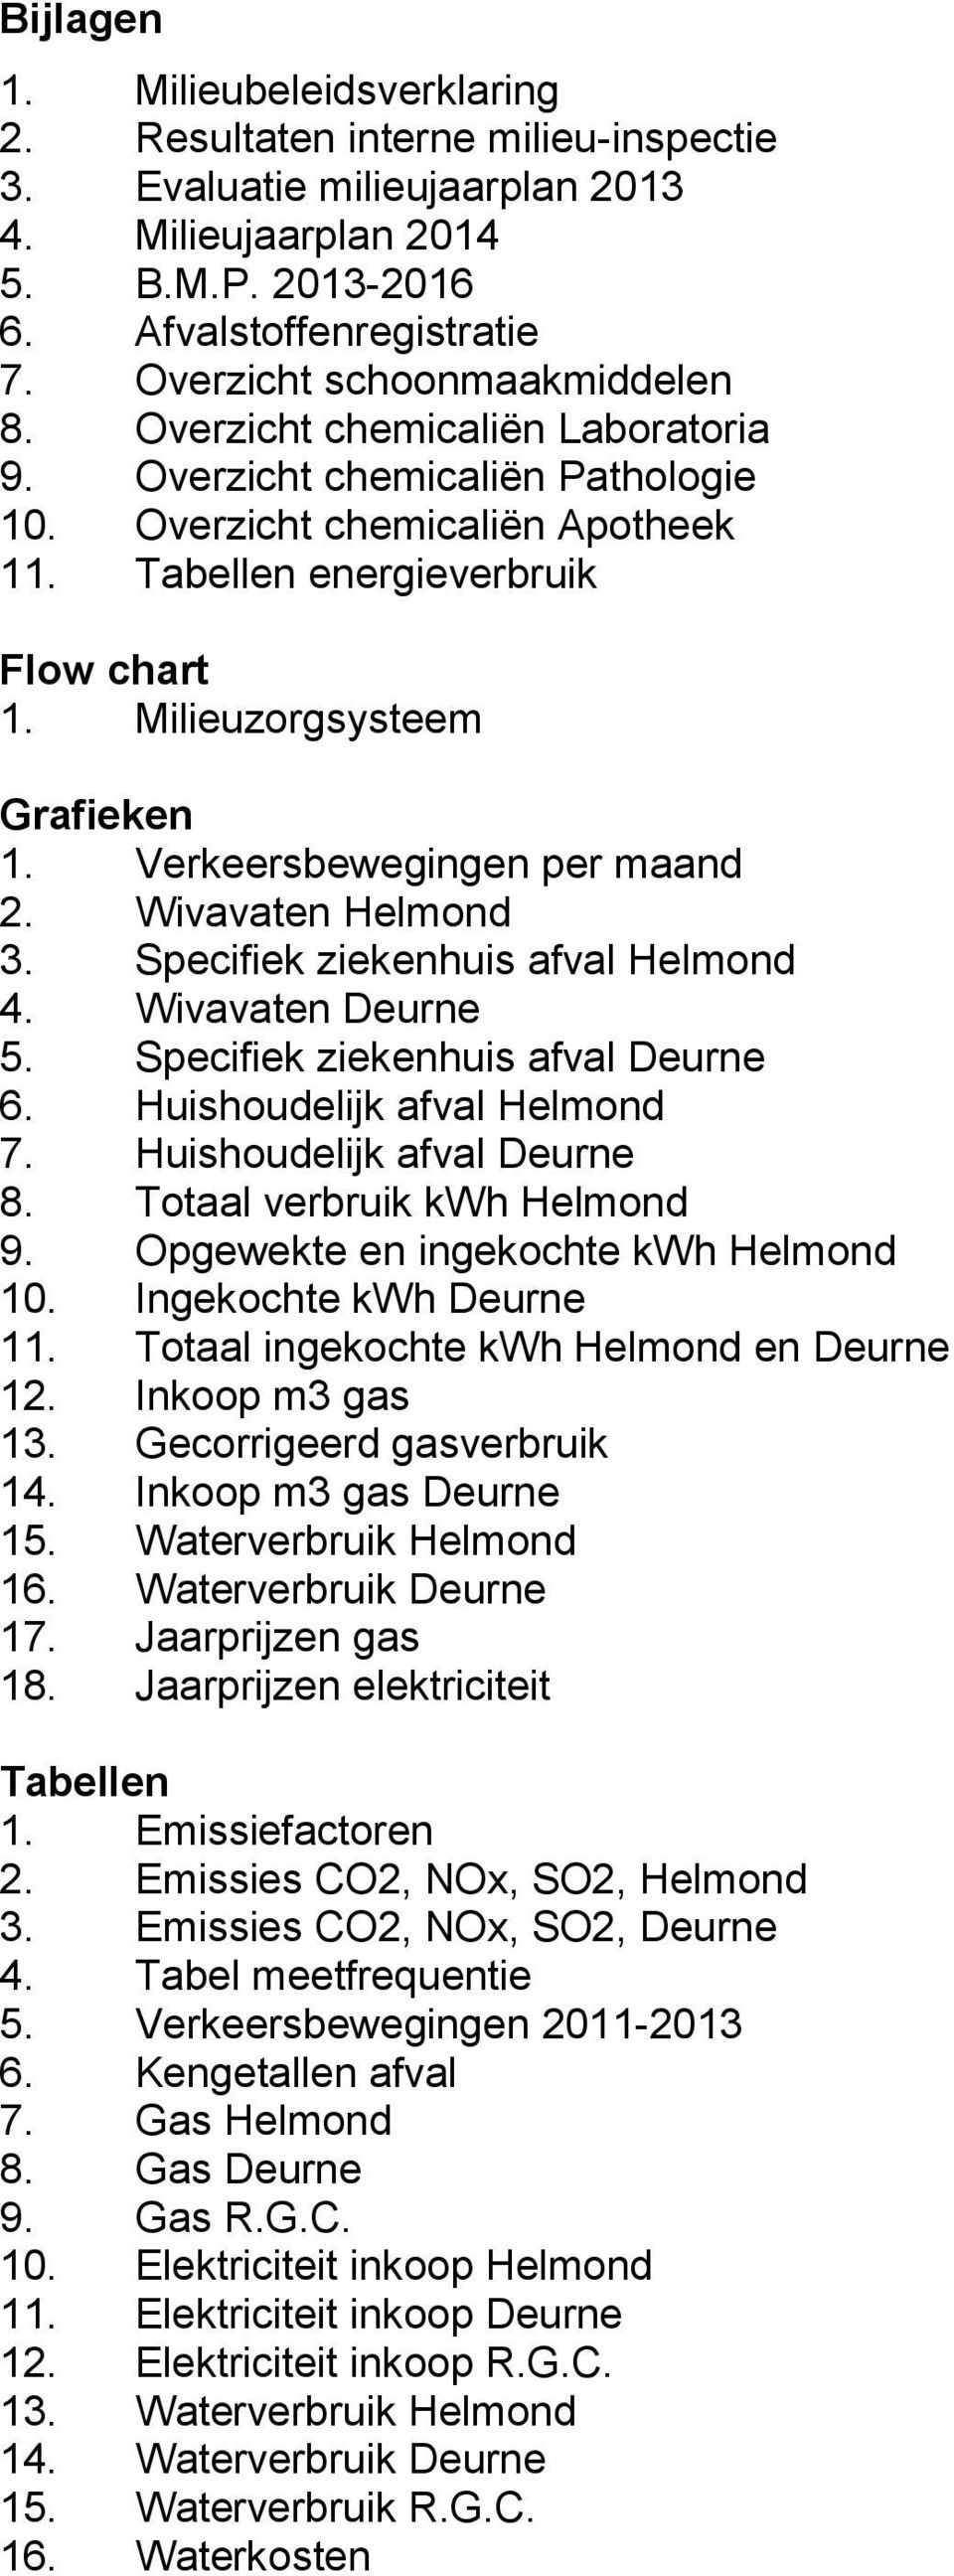 Milieuzorgsysteem Grafieken 1. Verkeersbewegingen per maand 2. Wivavaten Helmond 3. Specifiek ziekenhuis afval Helmond 4. Wivavaten Deurne 5. Specifiek ziekenhuis afval Deurne 6.